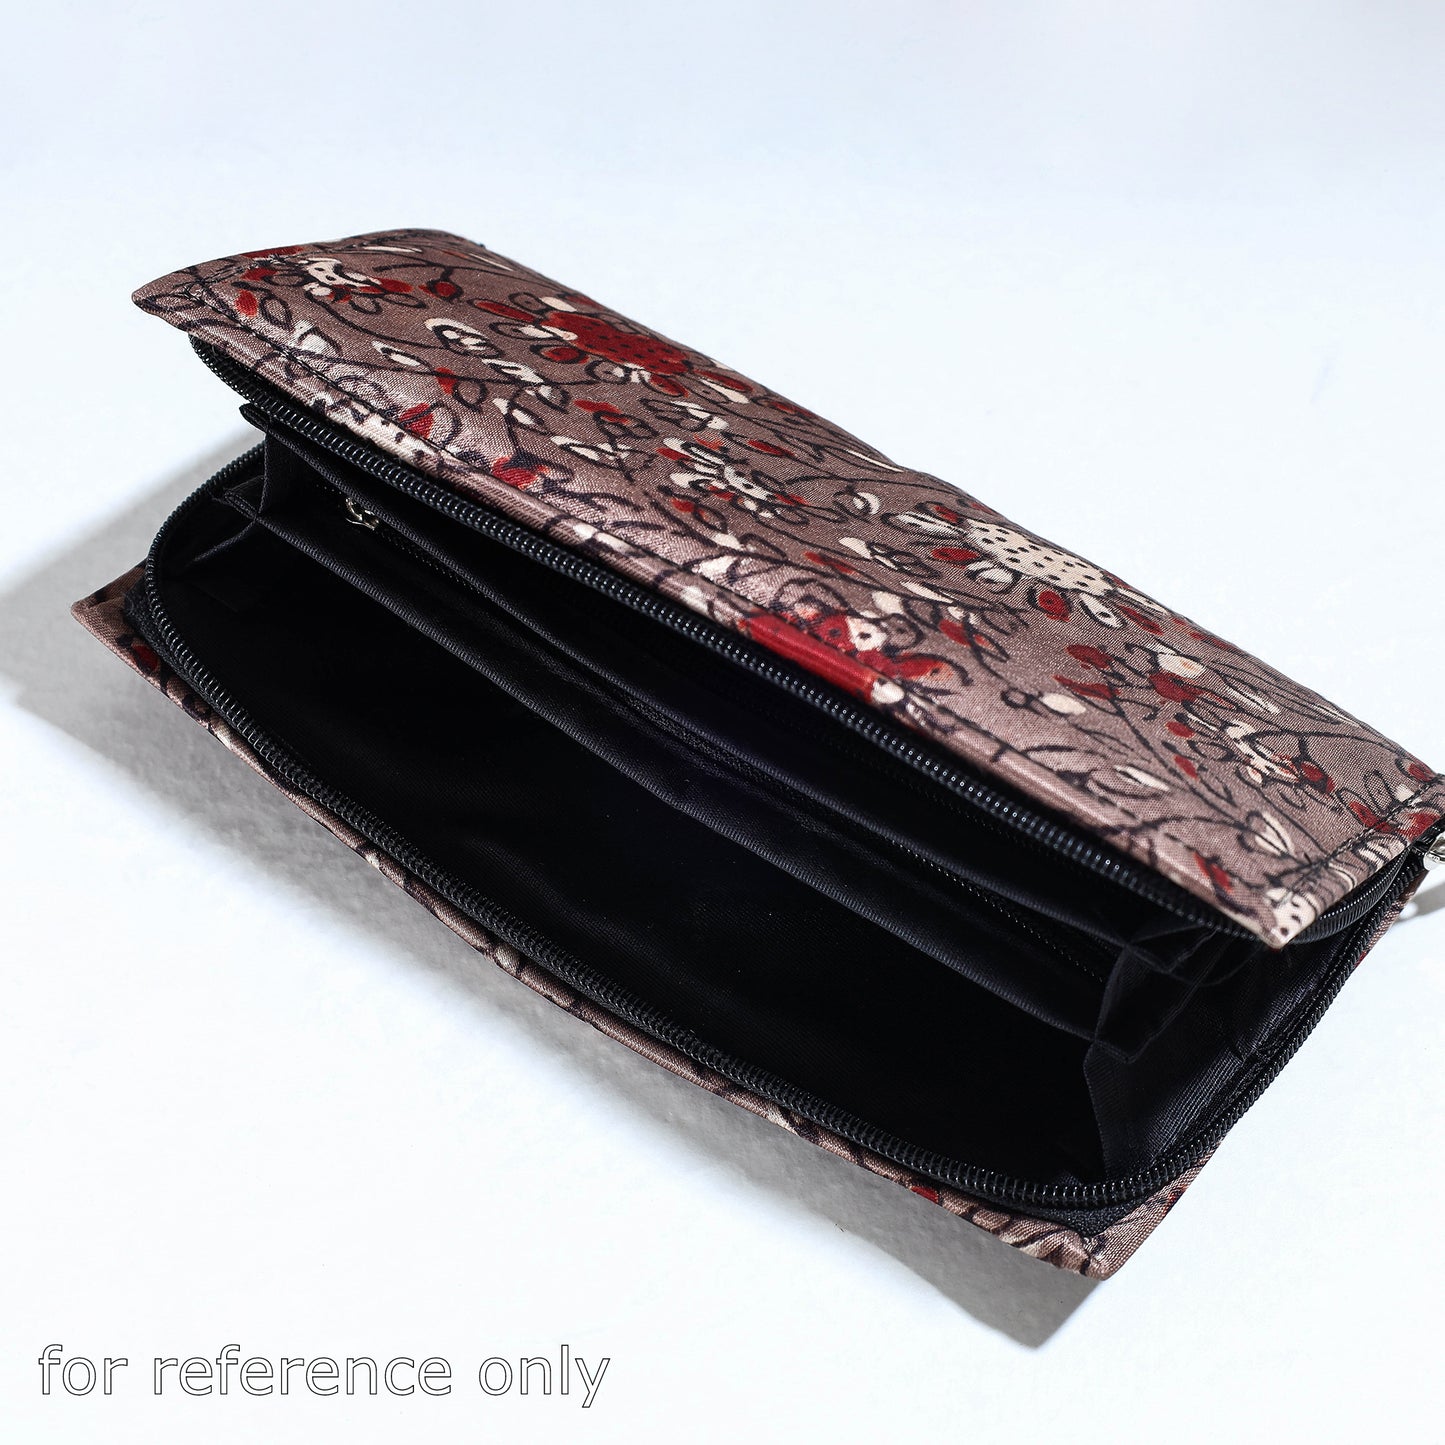 Handcrafted Ajrakh Mashru Silk Clutch / Wallet